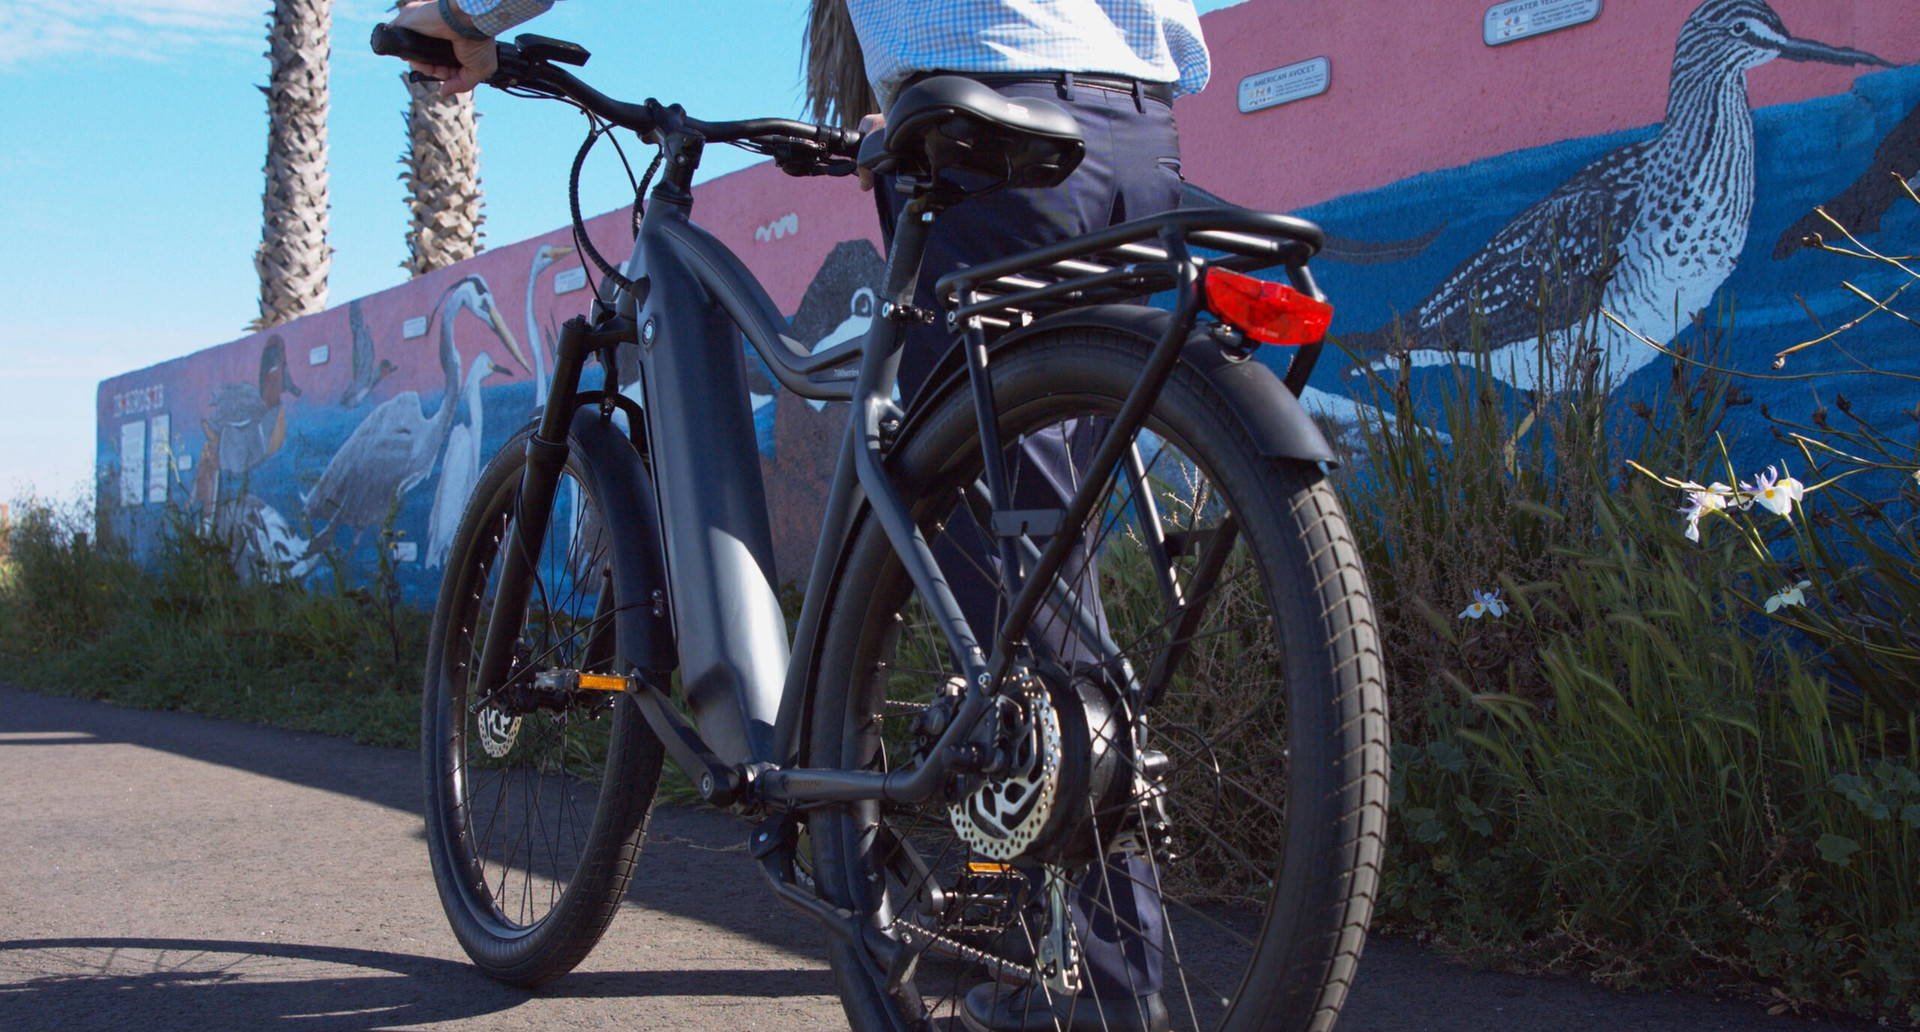 Trước khi quyết định mua xe đạp điện, hãy thử mượn xe của bạn bè để trải nghiệm.